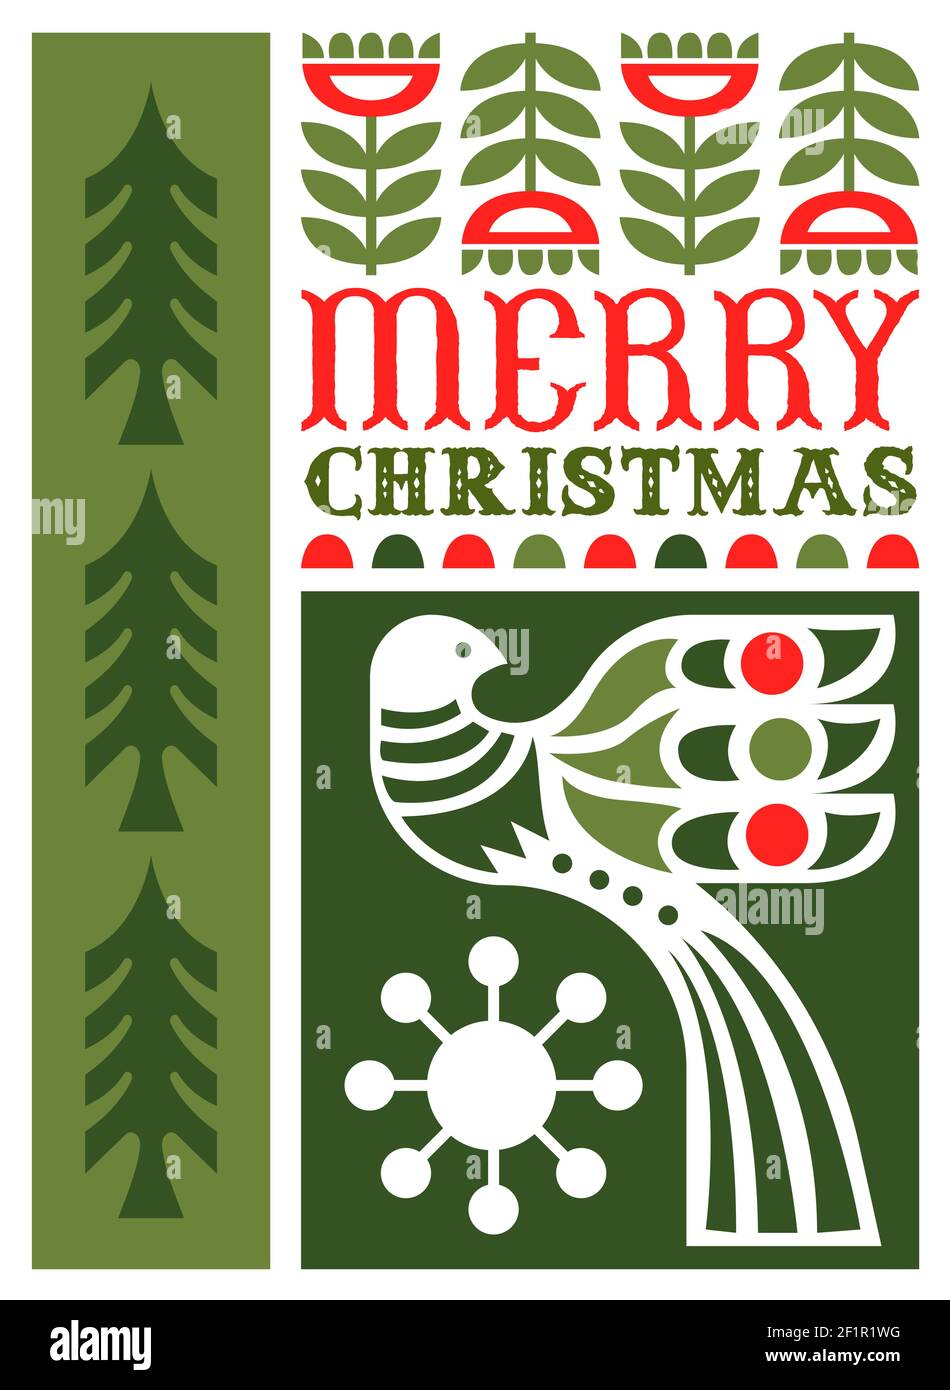 Frohe Weihnachten Grußkarte Illustration in modernen minimalistischen Folk Art Stil. Festliches Feiertagsdesign mit geometrischer flacher nordischer Dekoration. Enthält Stock Vektor